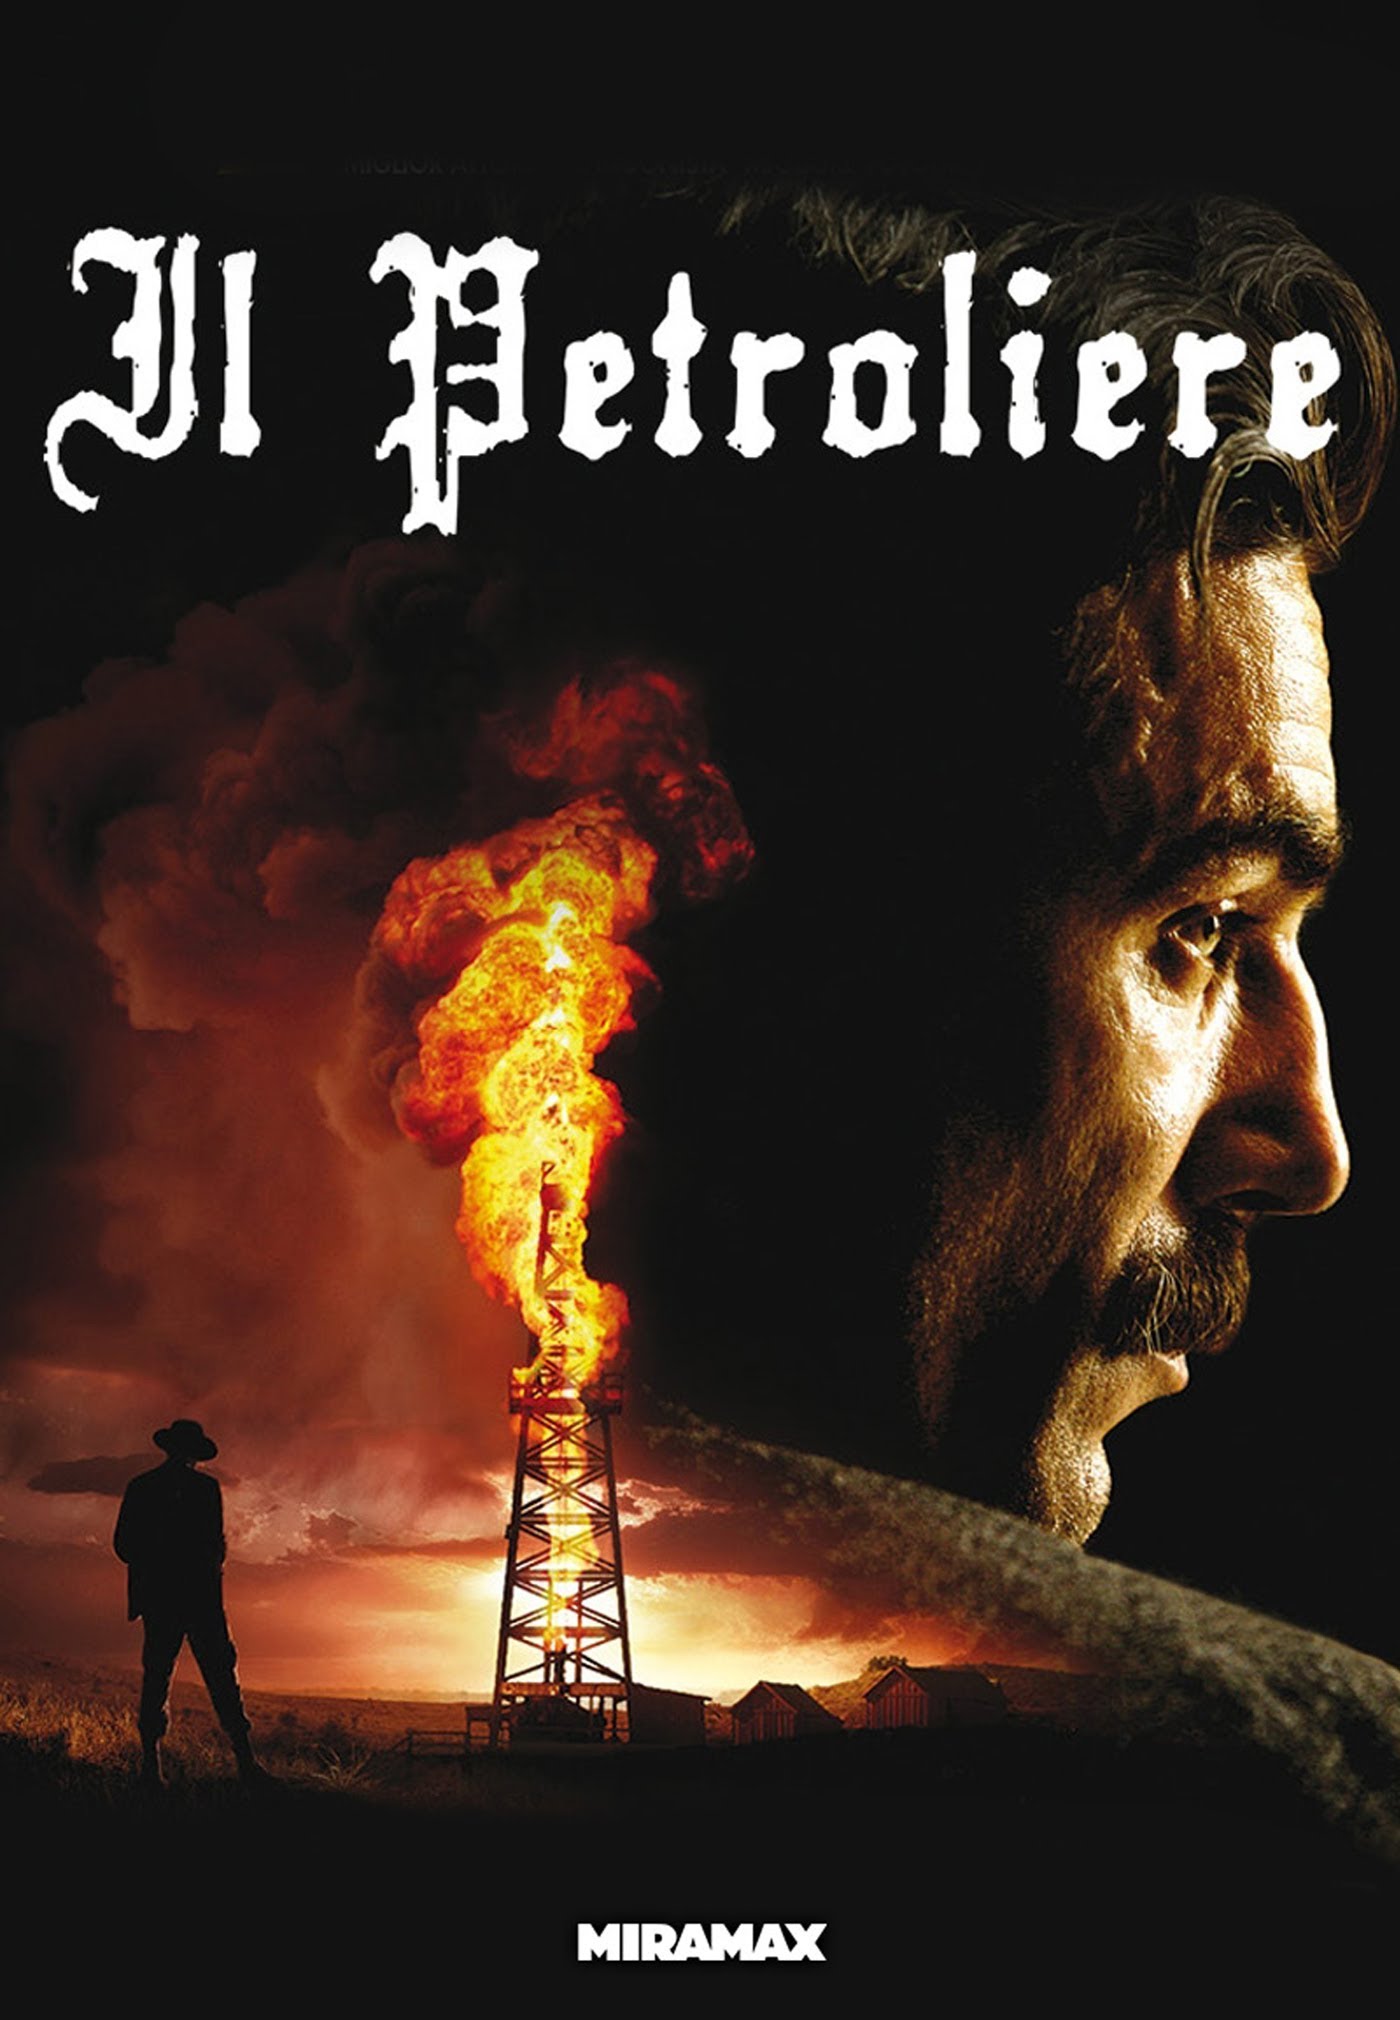 Il Petroliere [HD] (2007)